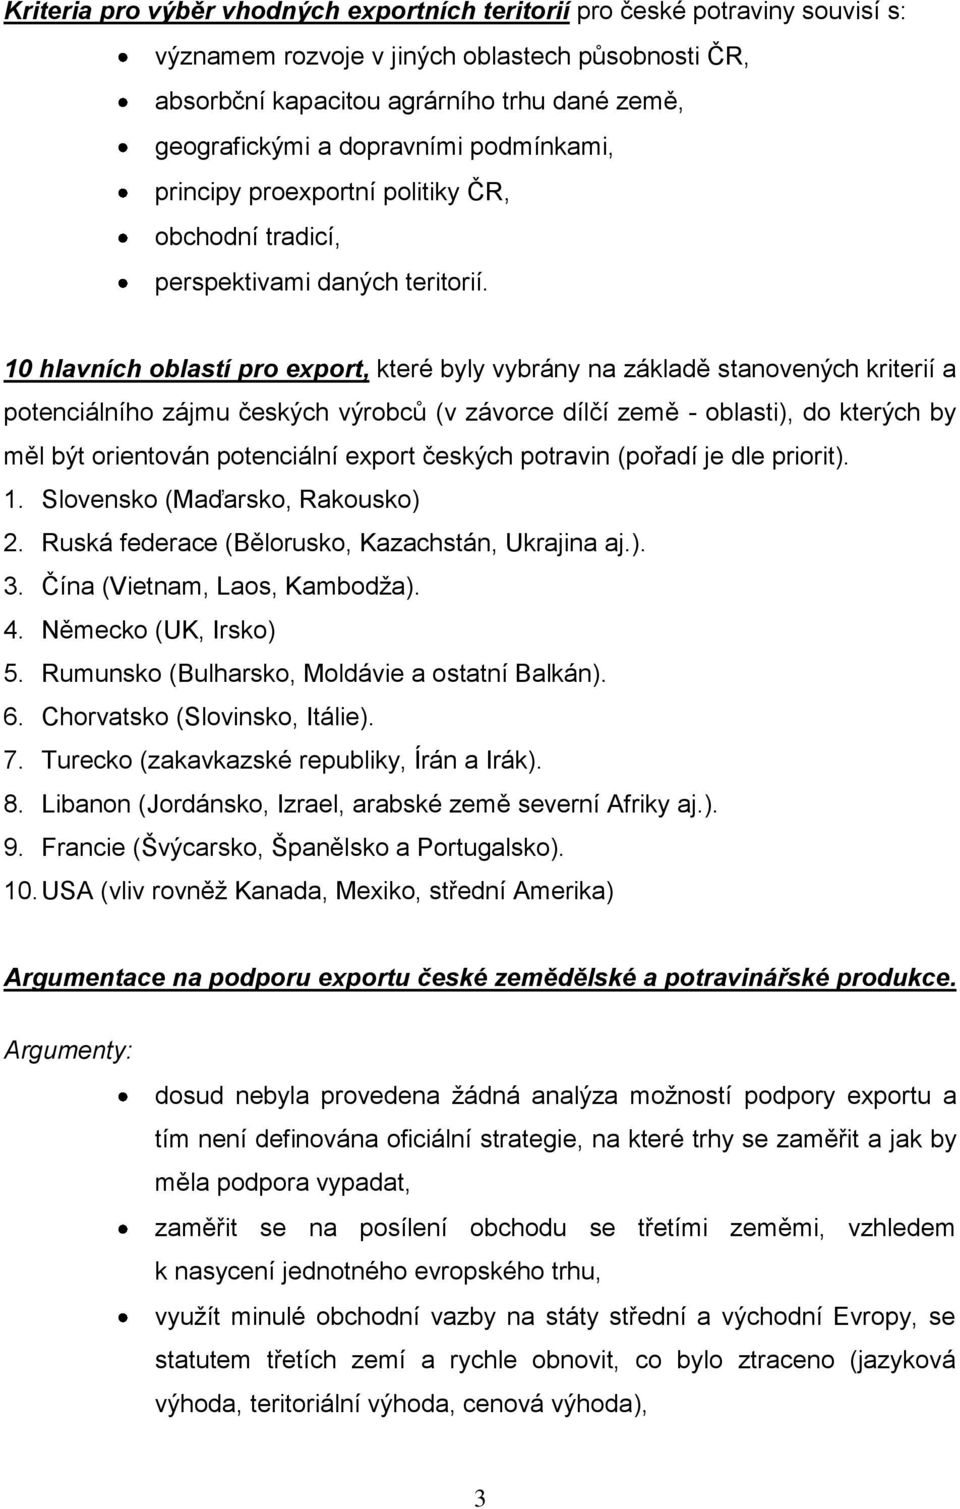 10 hlavních oblastí pro export, které byly vybrány na základě stanovených kriterií a potenciálního zájmu českých výrobců (v závorce dílčí země - oblasti), do kterých by měl být orientován potenciální